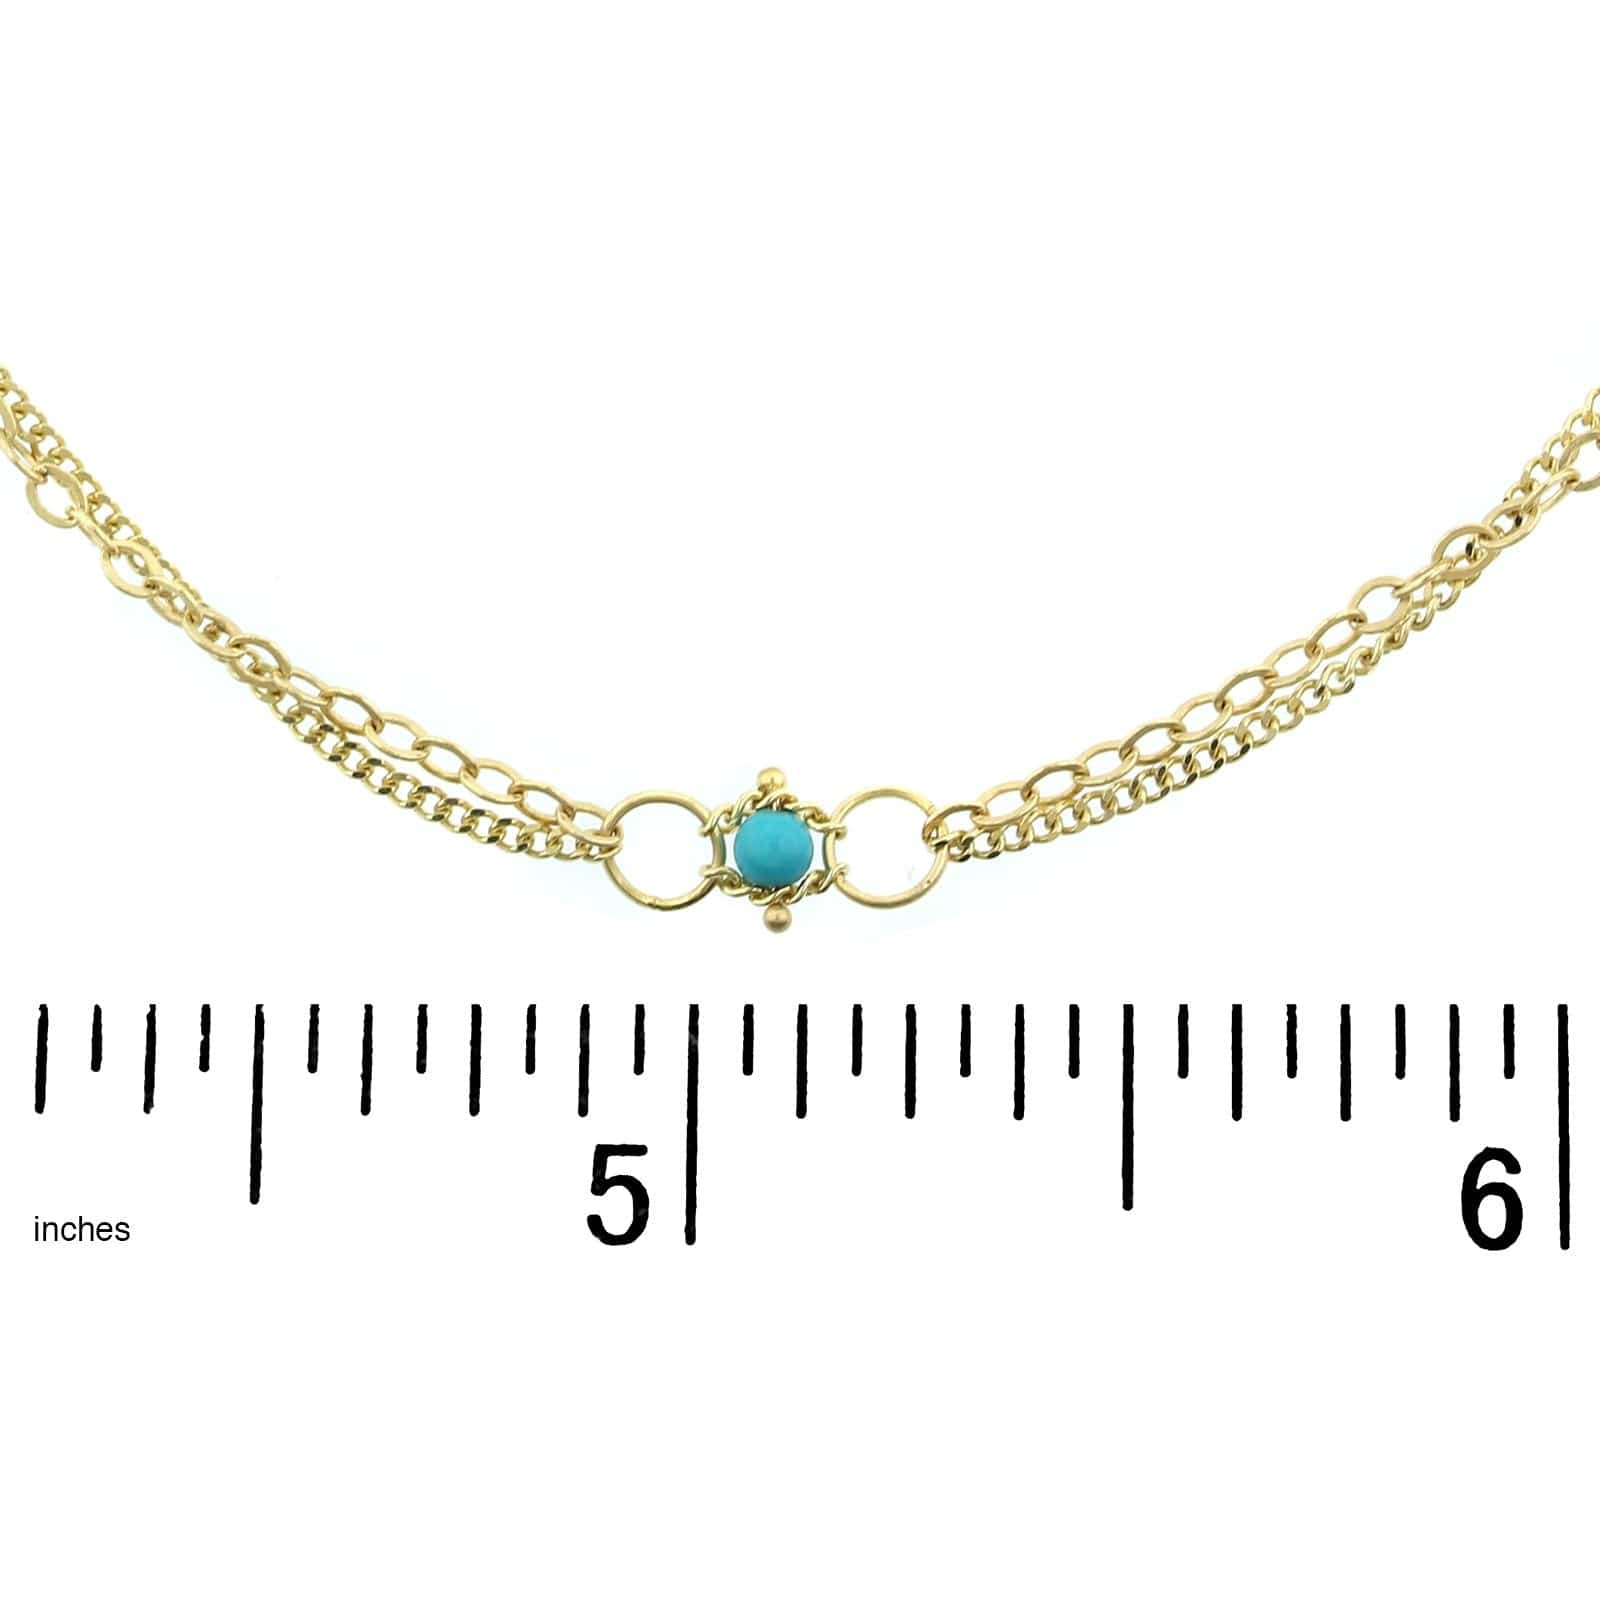 Amali 18K Yellow Gold Round Turquoise Station Necklace